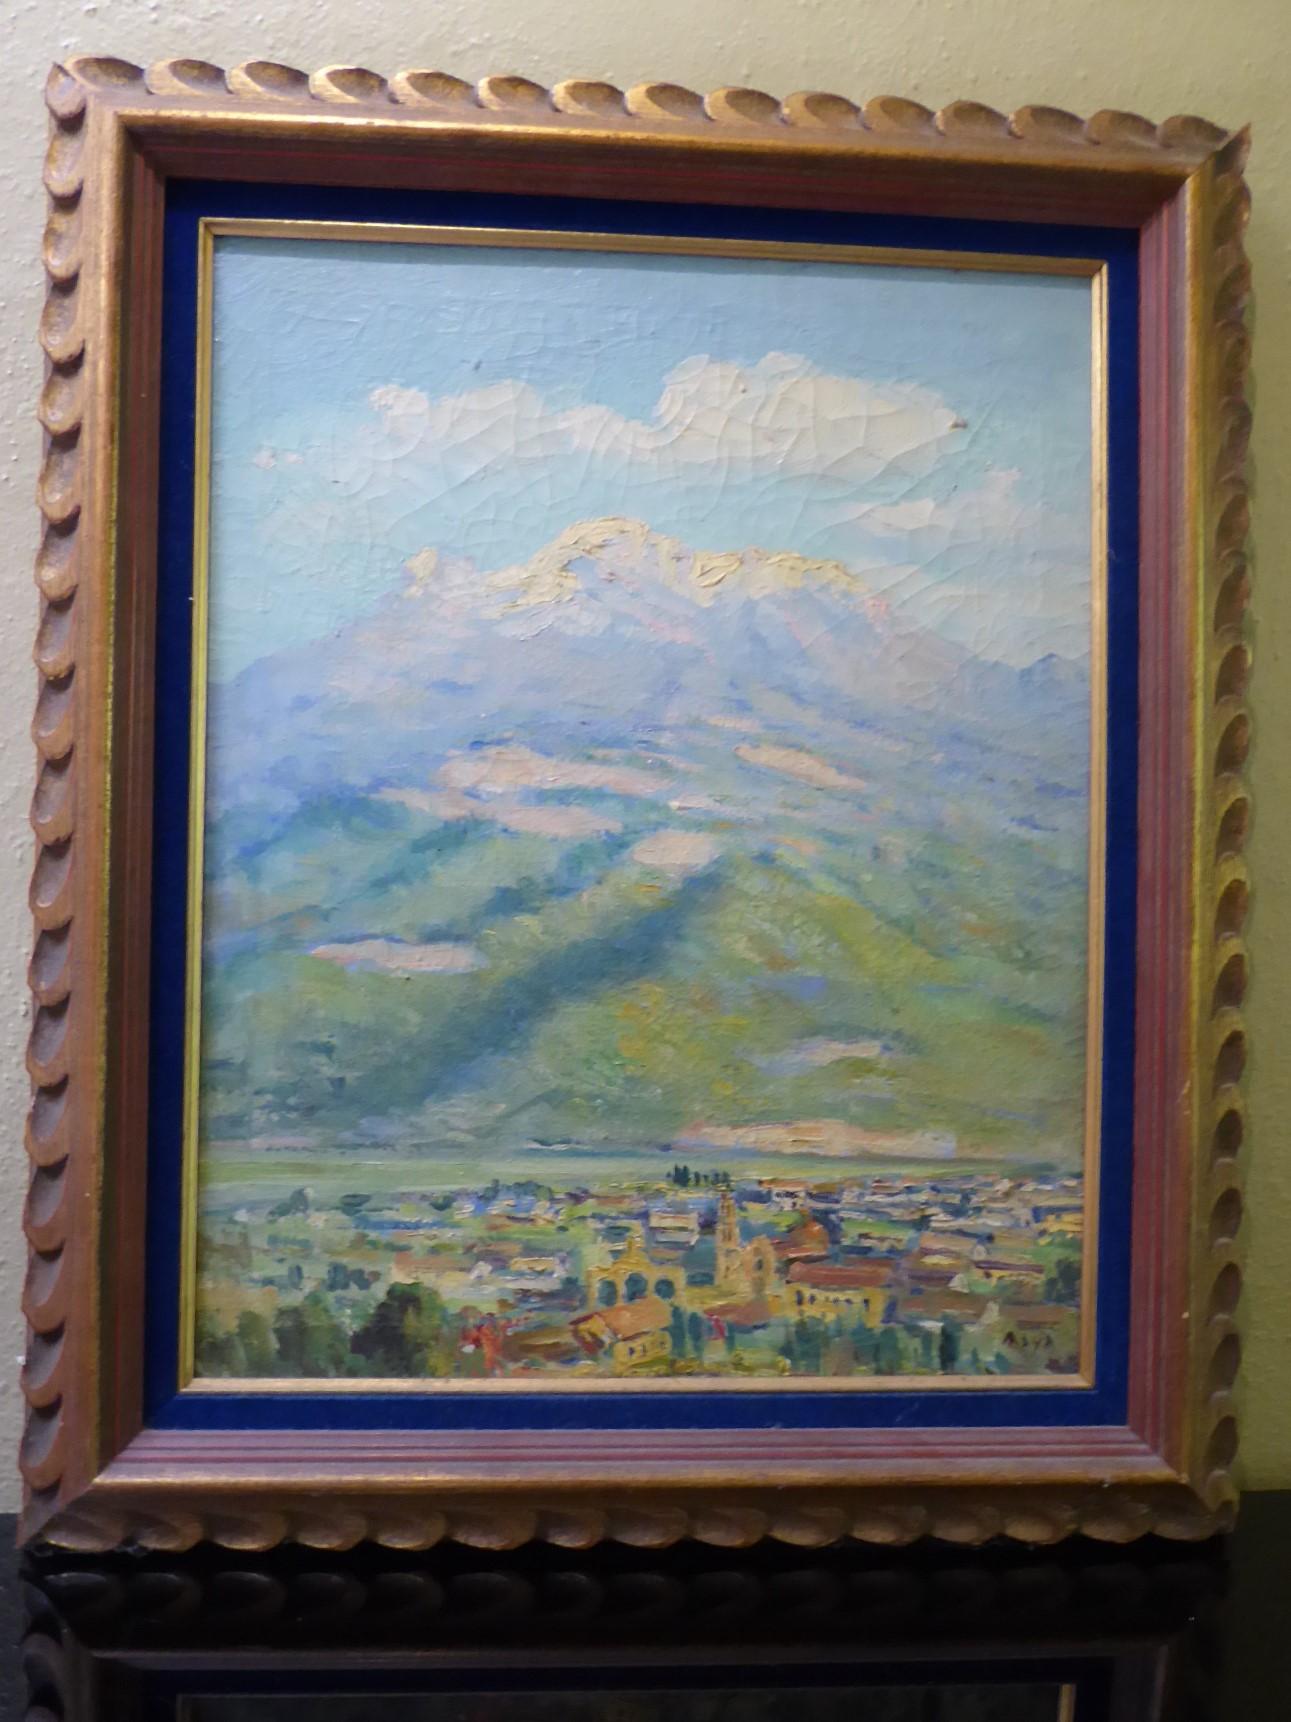 Vintage Reynaldo Maya (1911-Mexiko) Landschaft Öl auf Leinwand Gemälde der mexikanischen Stadt in der Ferne und  schneebedeckte Berge (Vulkane) im Hintergrund. Kräftige Pinselstriche mit einer weichen, gedämpften Farbpalette. Im originalen